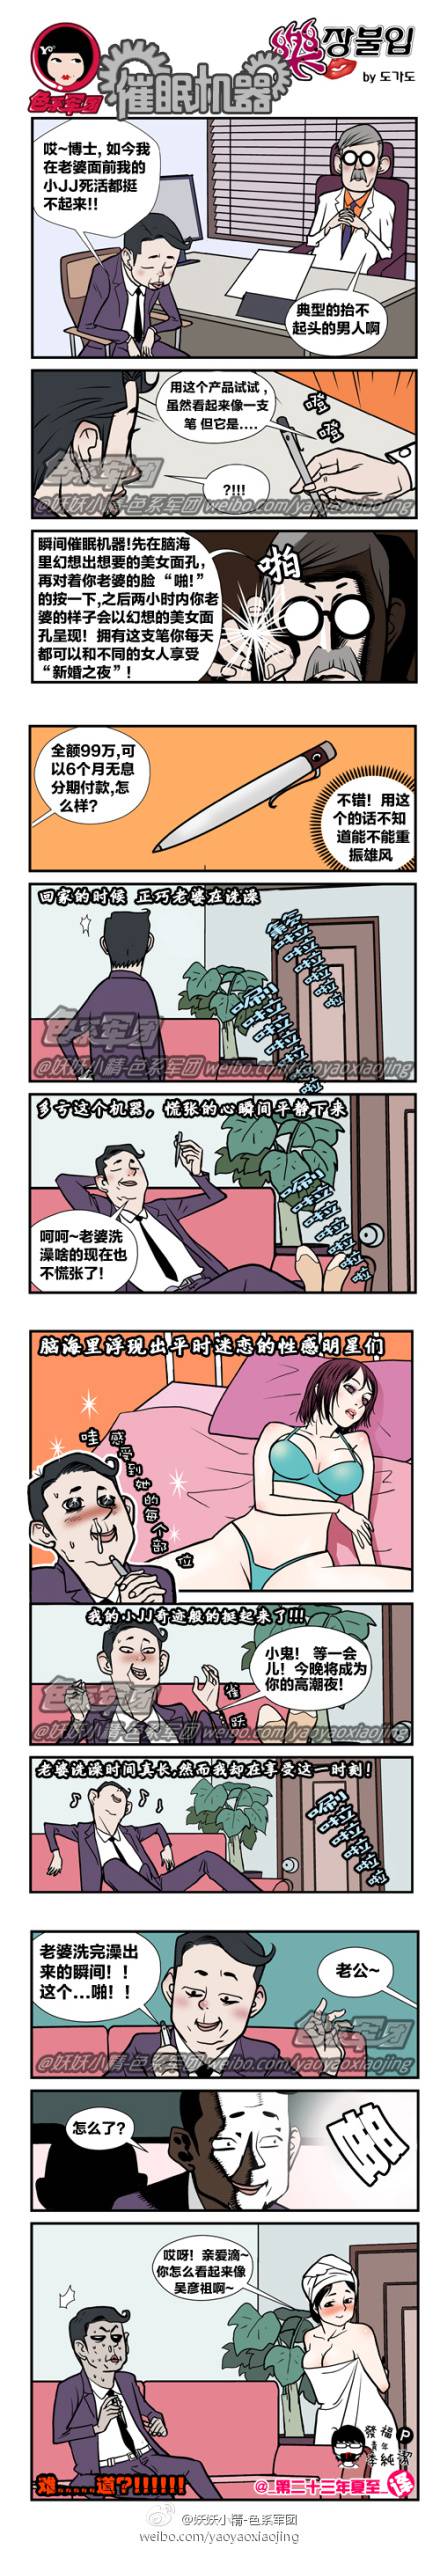 邪恶漫画爆笑囧图第15刊：被锻炼的小狗狗